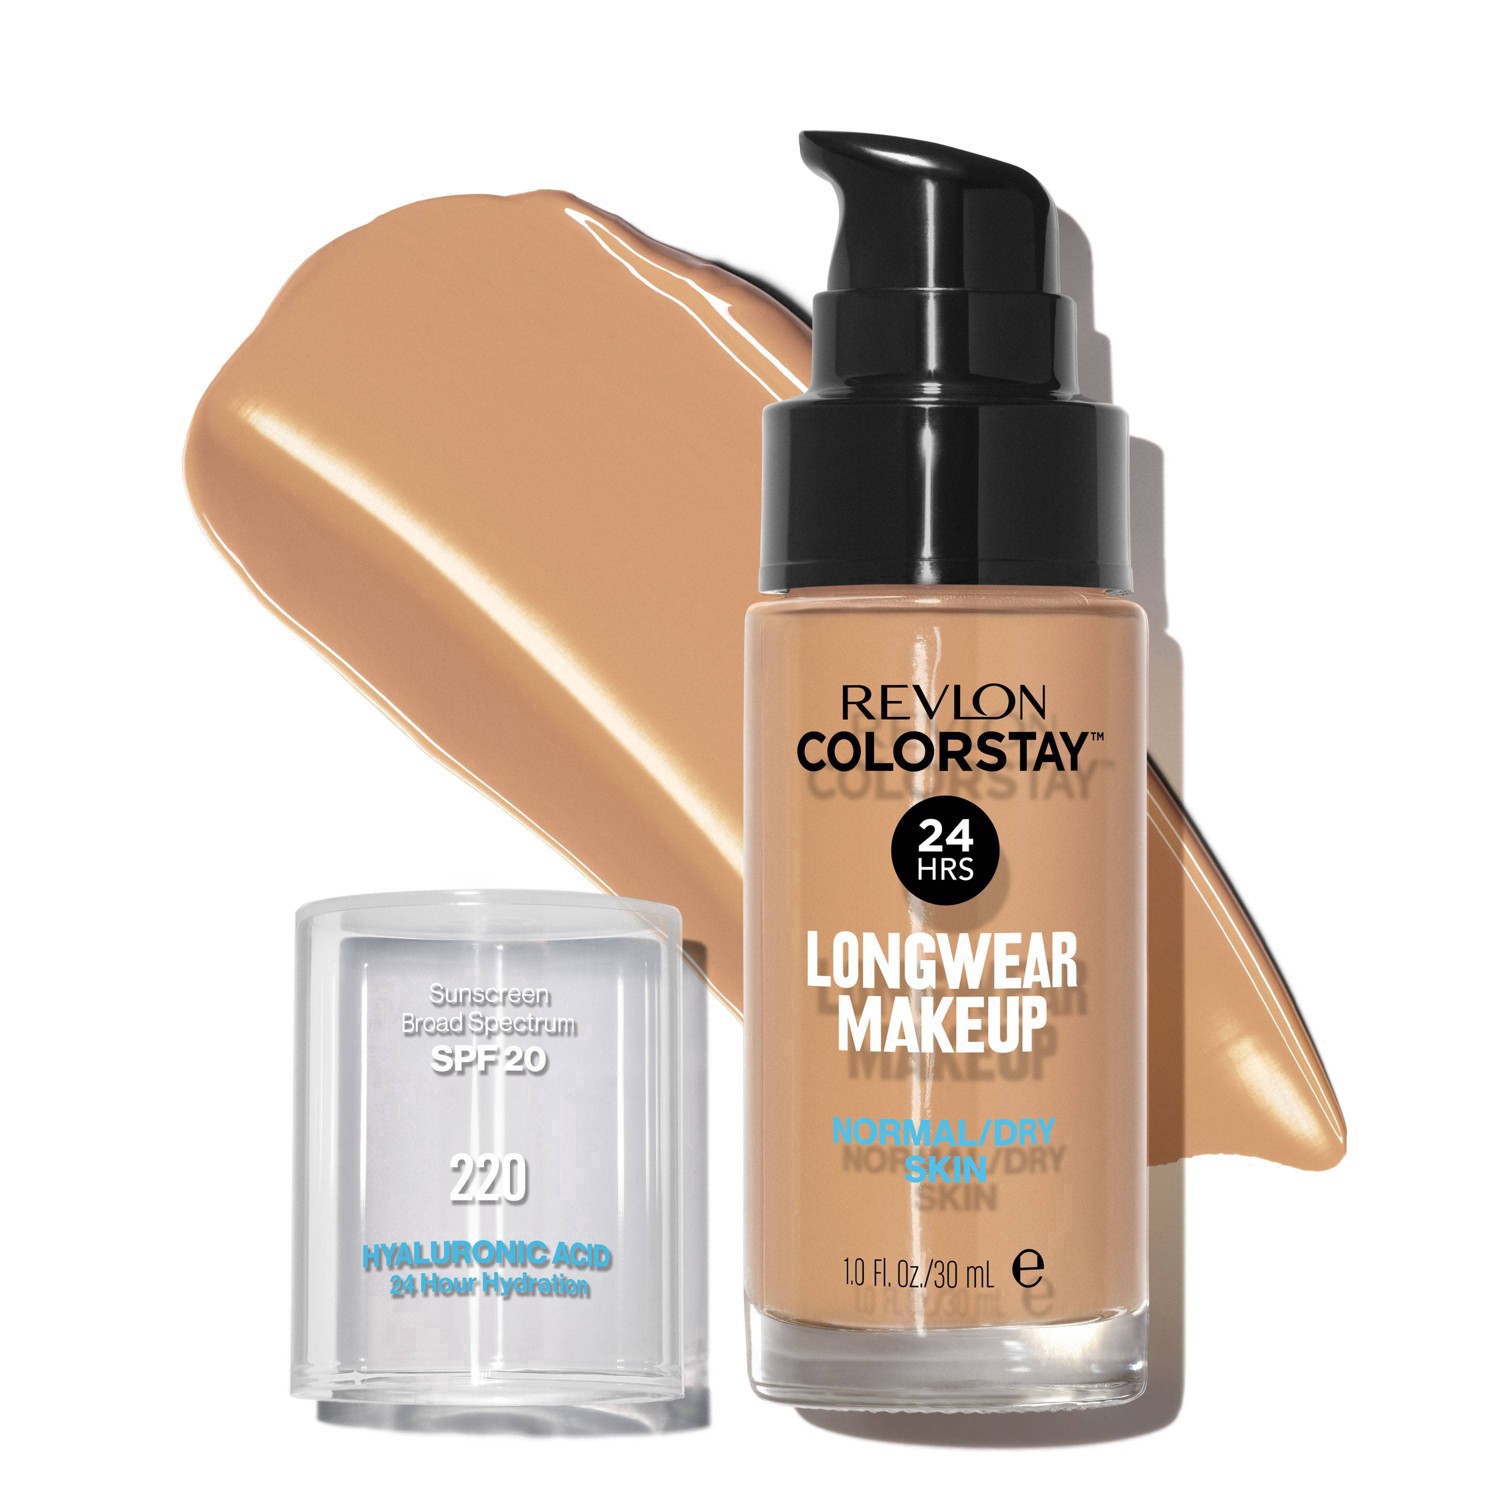 slide 30 of 69, Revlon ColorStay Makeup for Normal/Dry Skin with SPF 20 - 220 Natural Beige - 1 fl oz, 1 fl oz